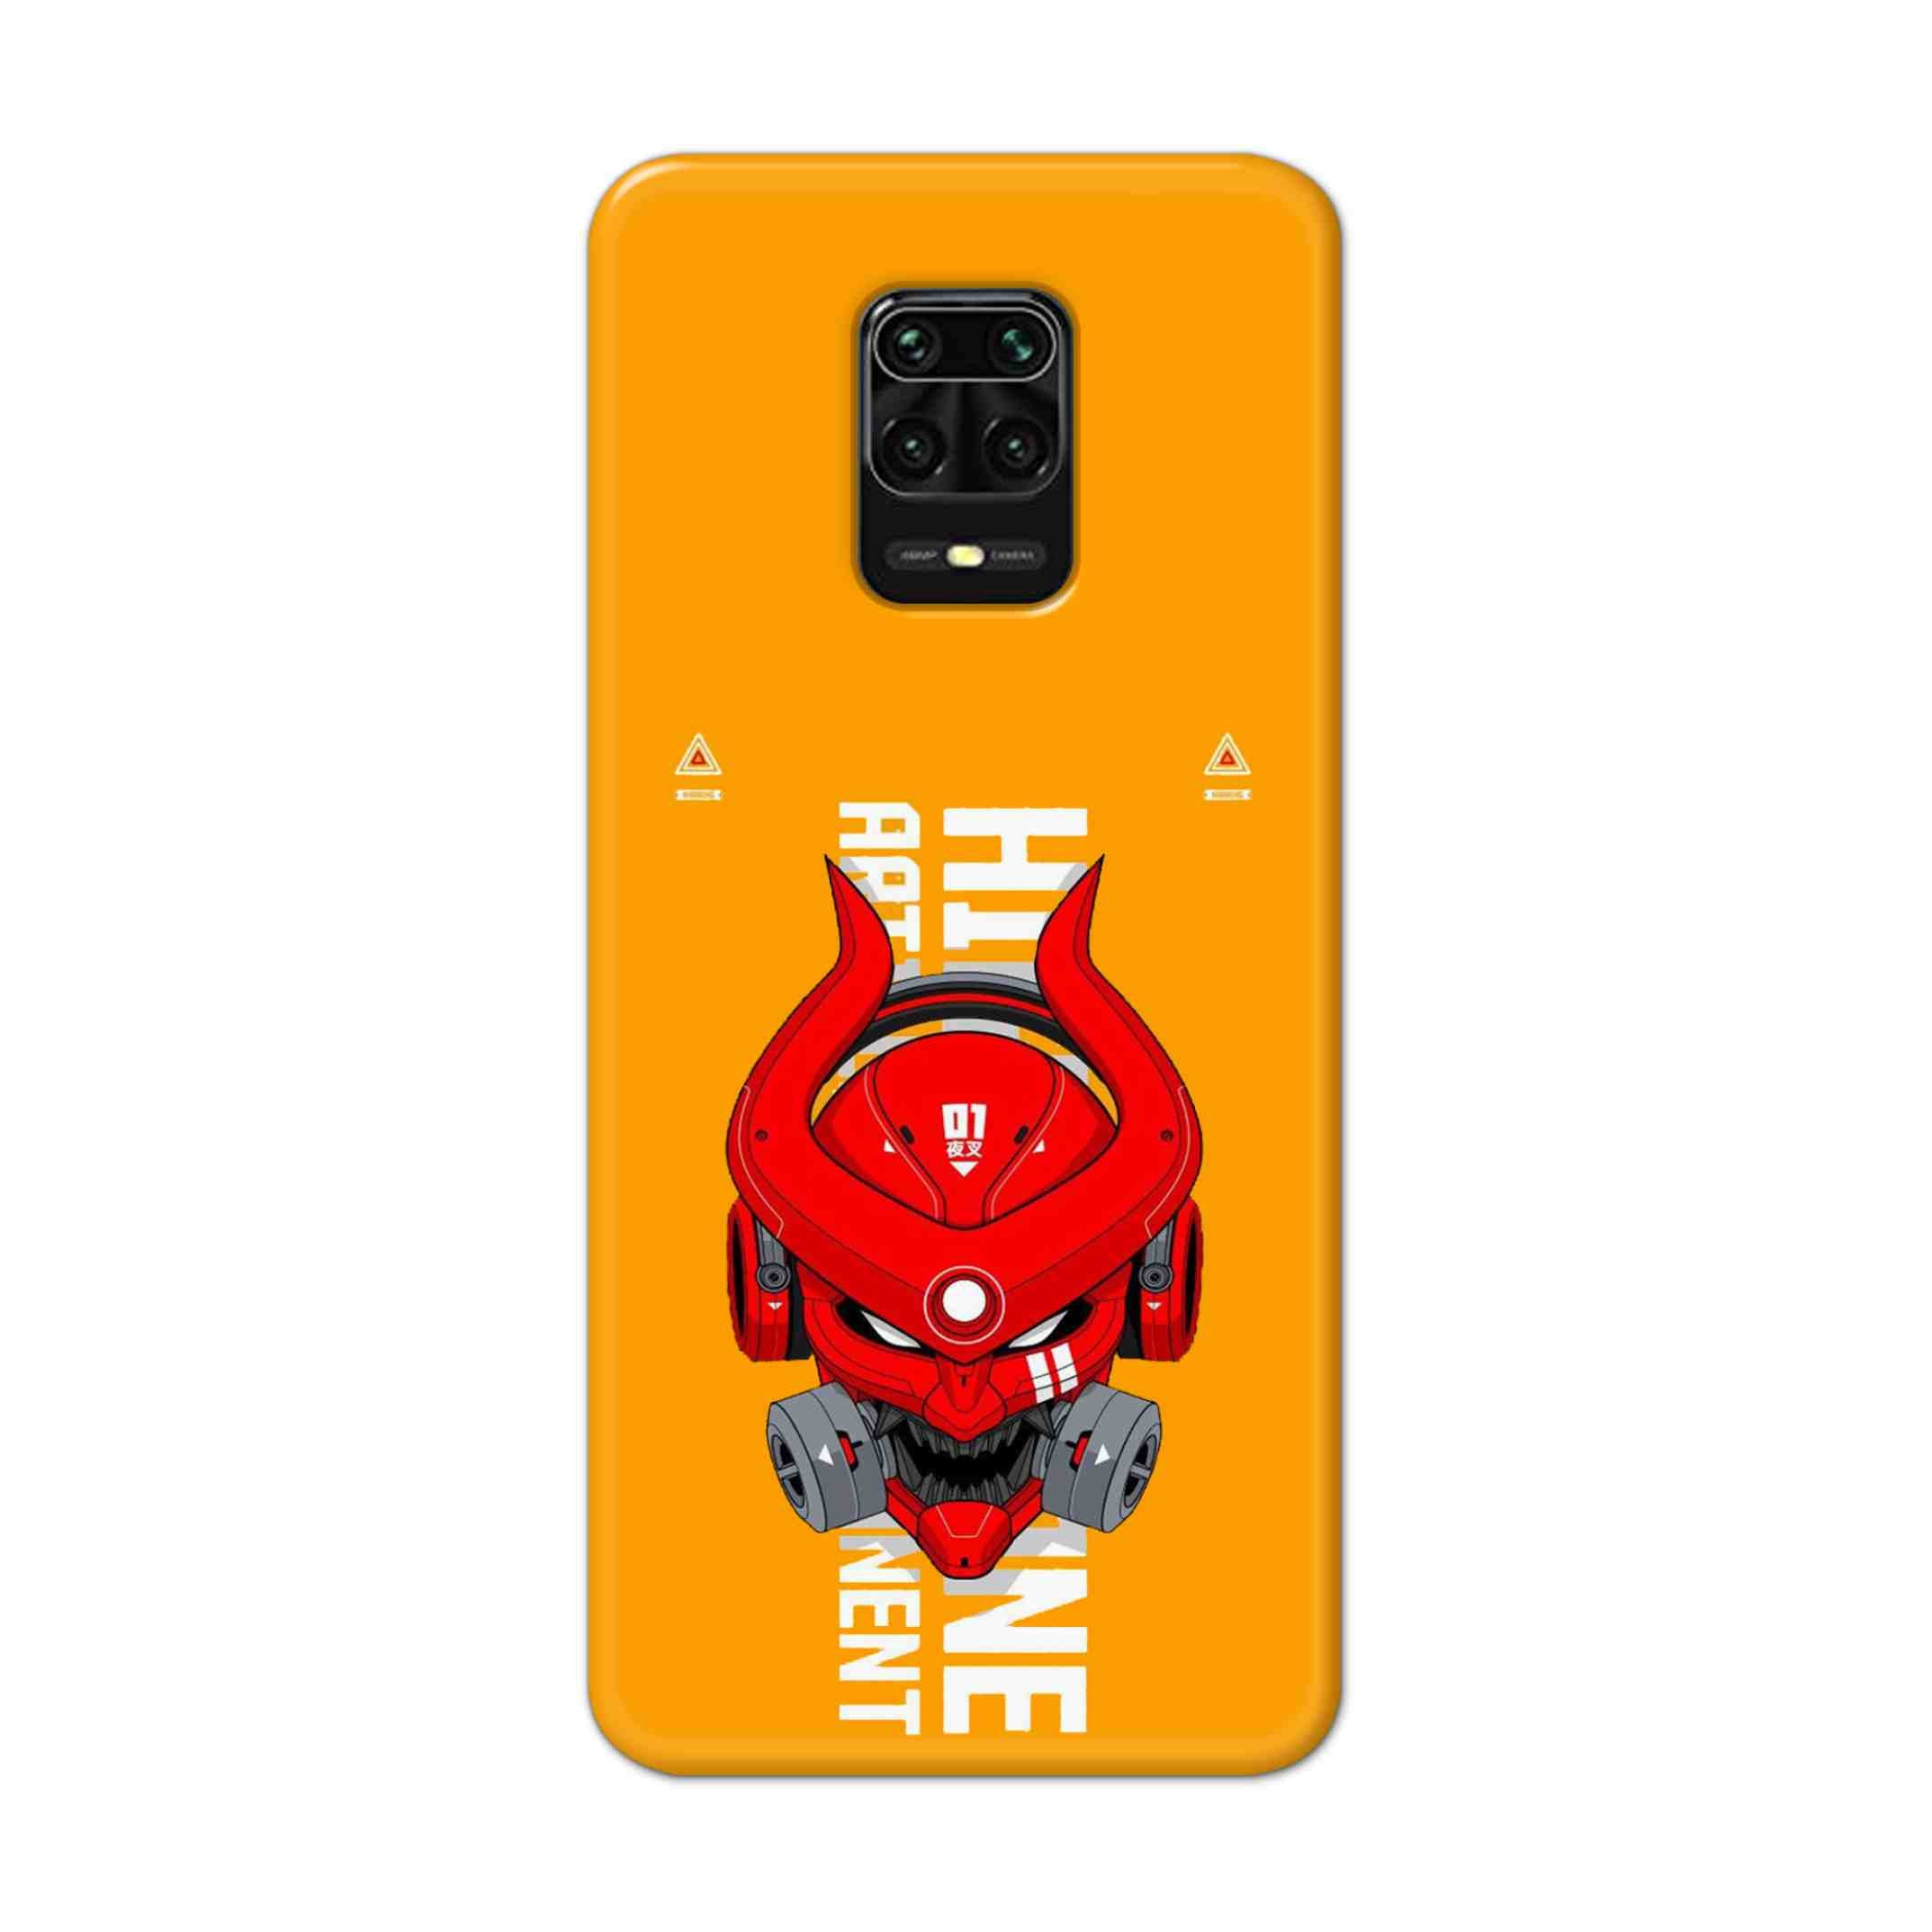 Buy Bull Skull Hard Back Mobile Phone Case Cover For Redmi Note 9 Pro Online